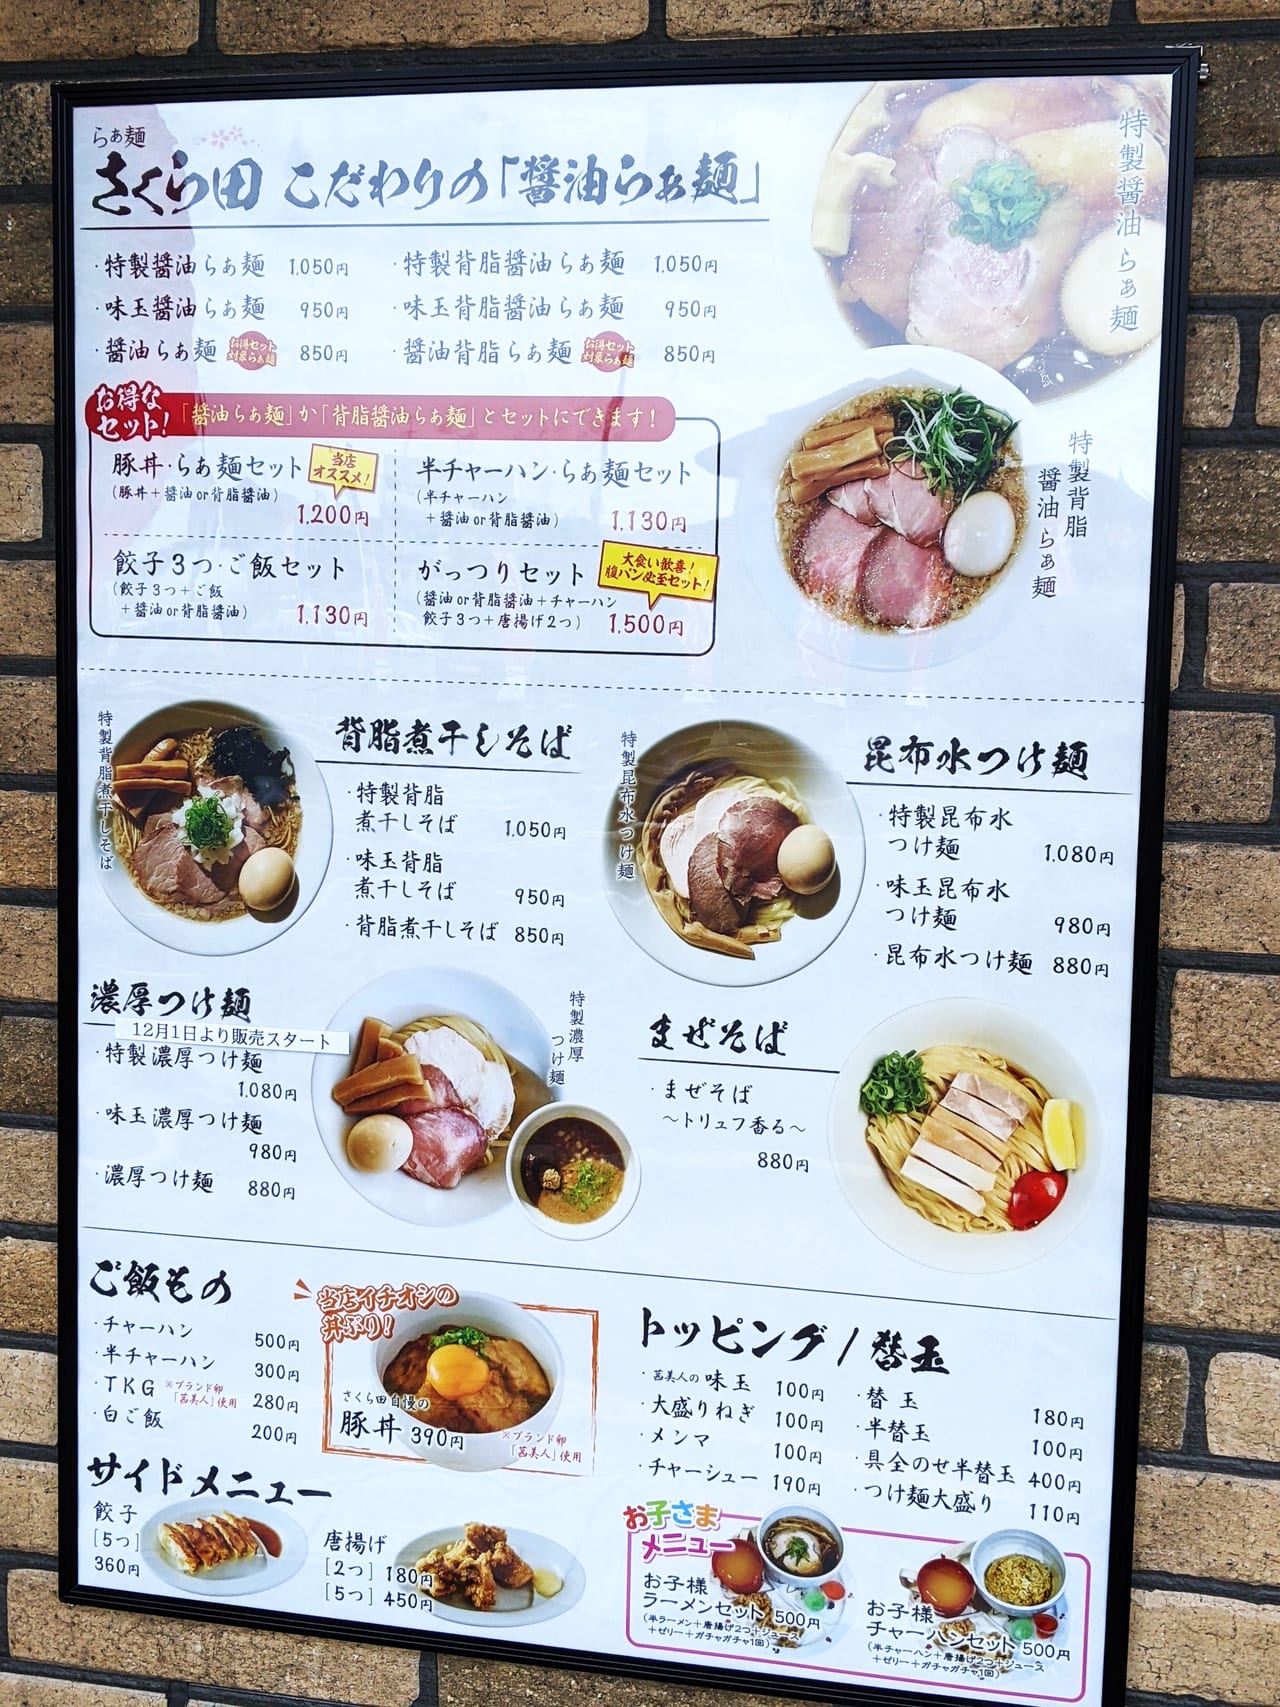 「らぁ麺 さくら田」のメニュー